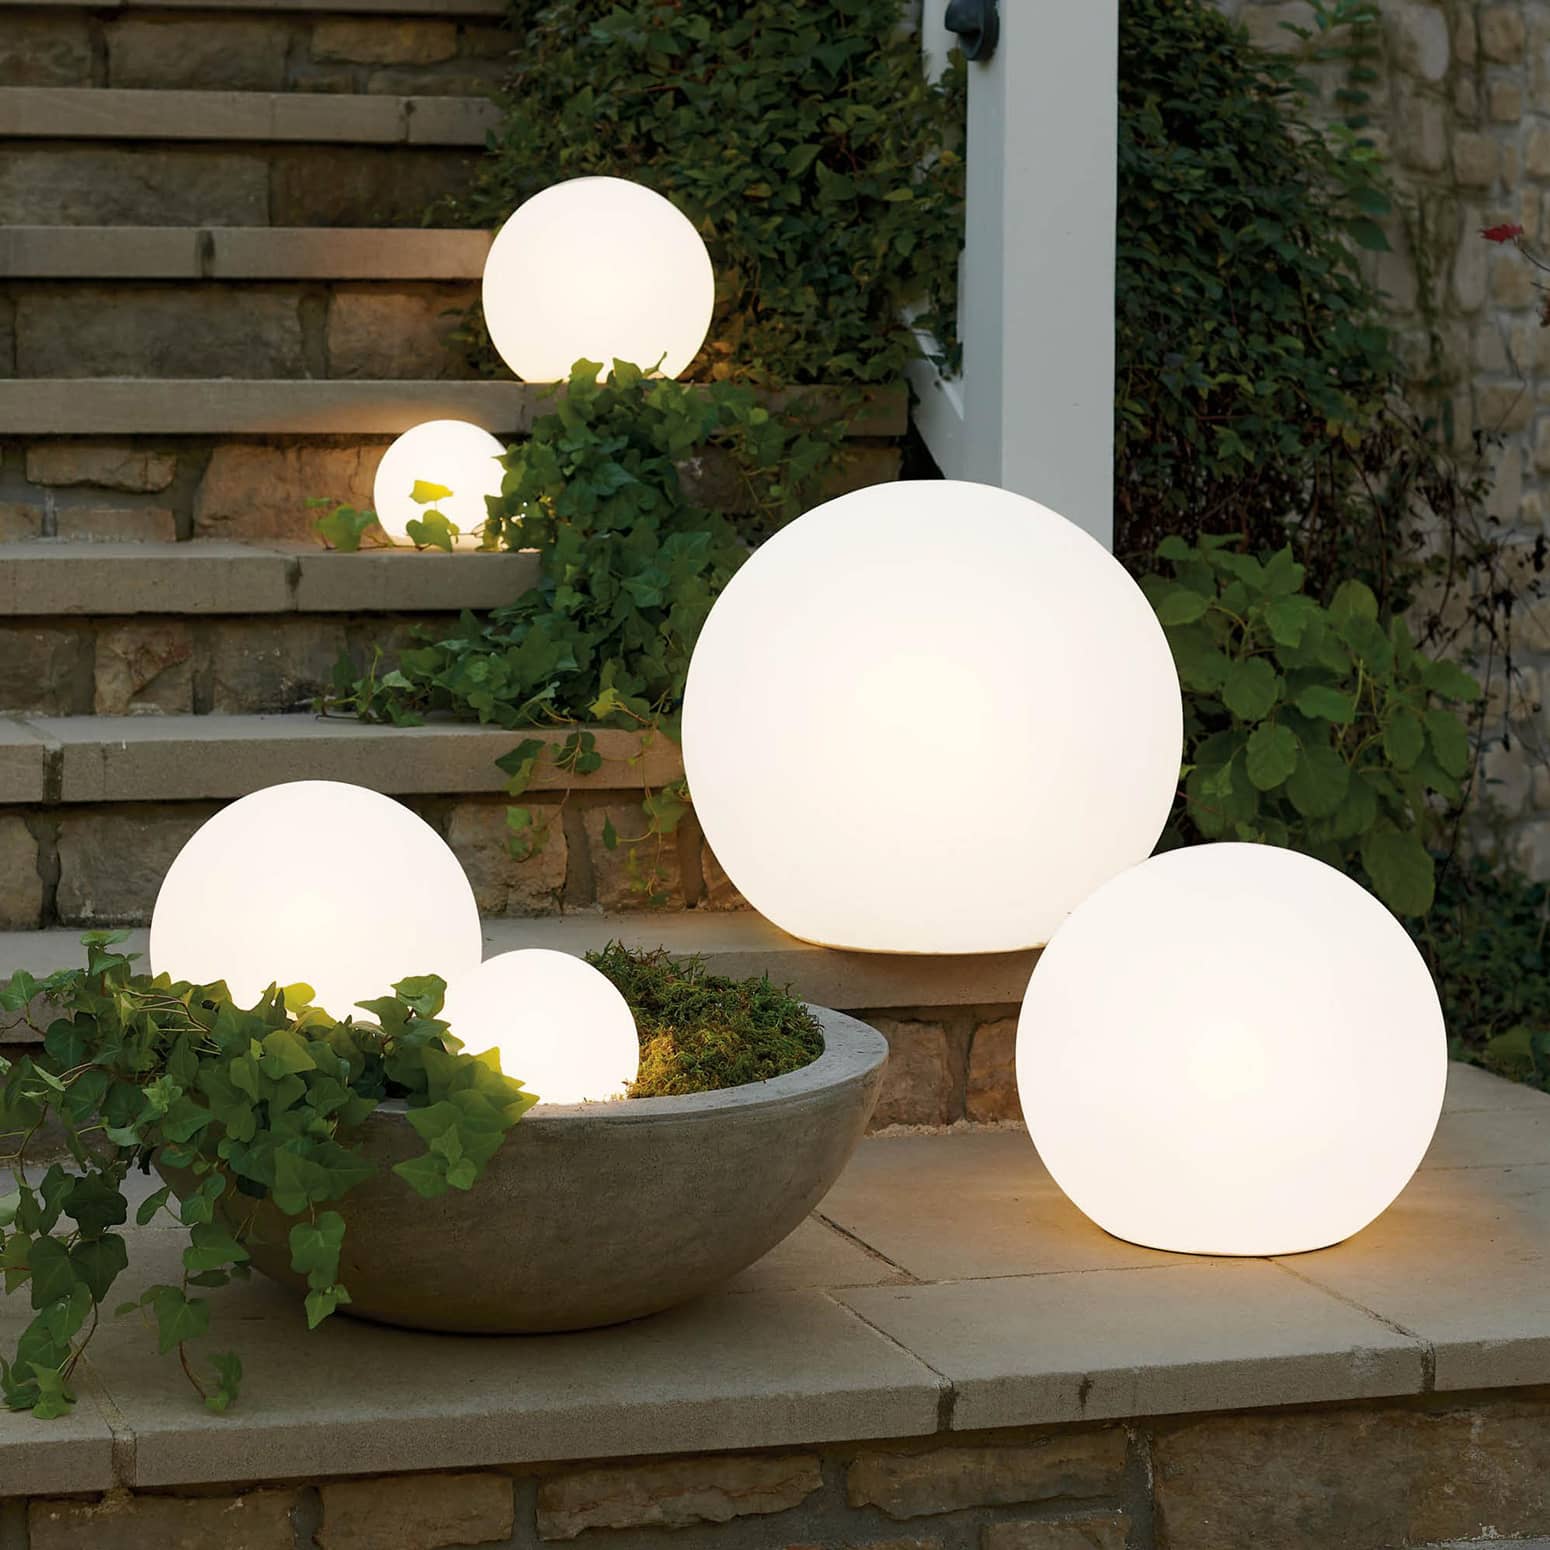 Outdoor Illuminated Spheres